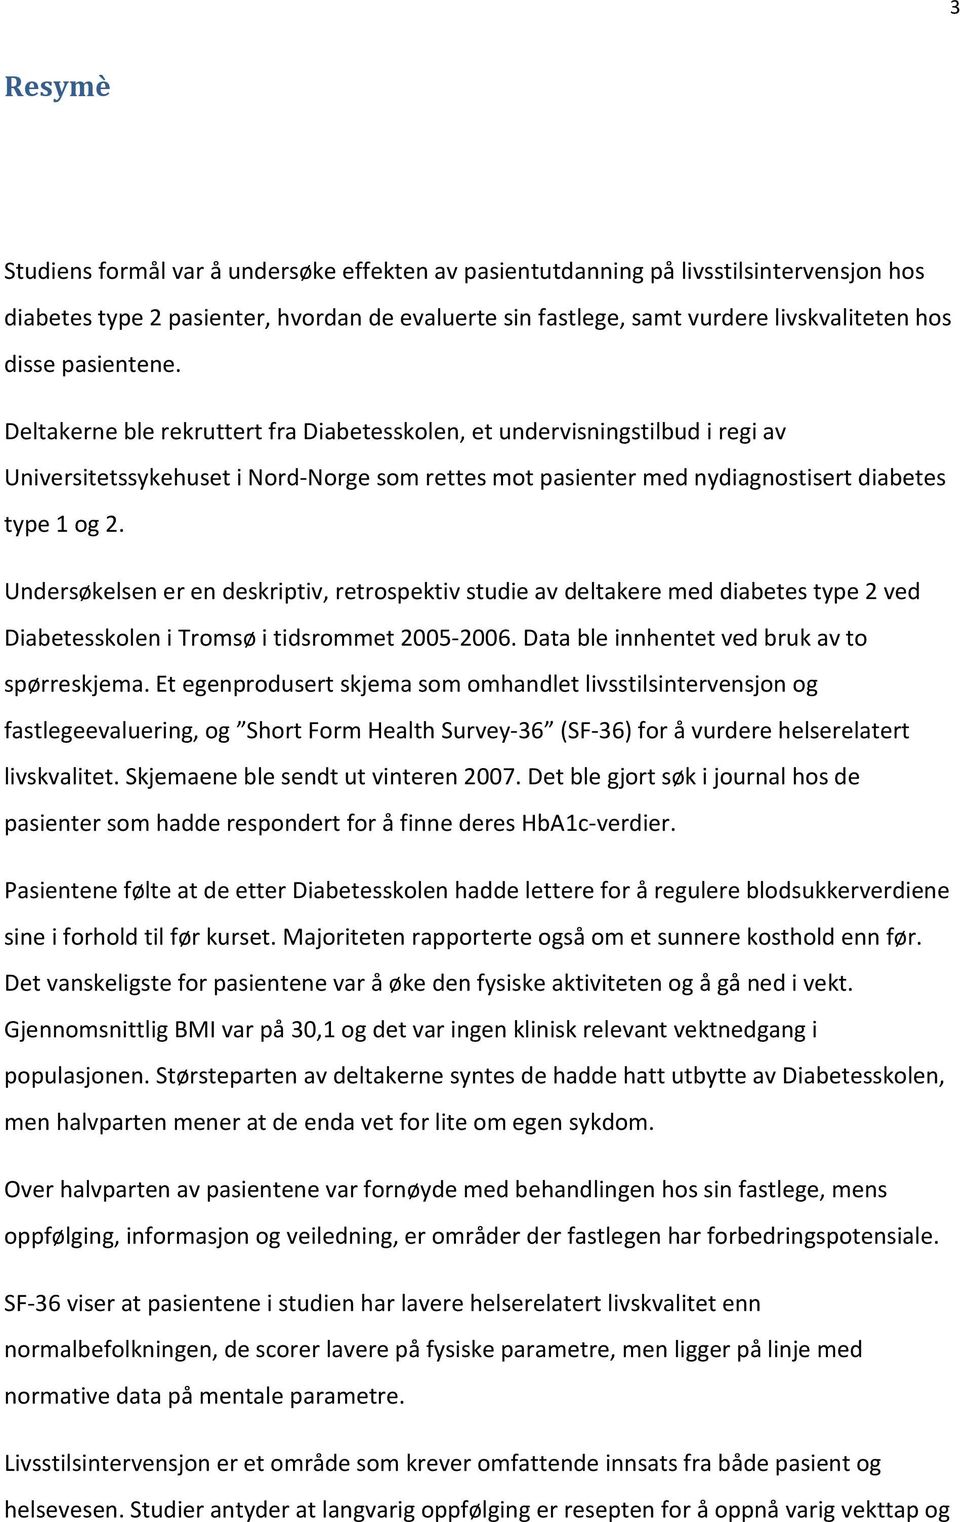 Undersøkelsen er en deskriptiv, retrospektiv studie av deltakere med diabetes type 2 ved Diabetesskolen i Tromsø i tidsrommet 2005-2006. Data ble innhentet ved bruk av to spørreskjema.